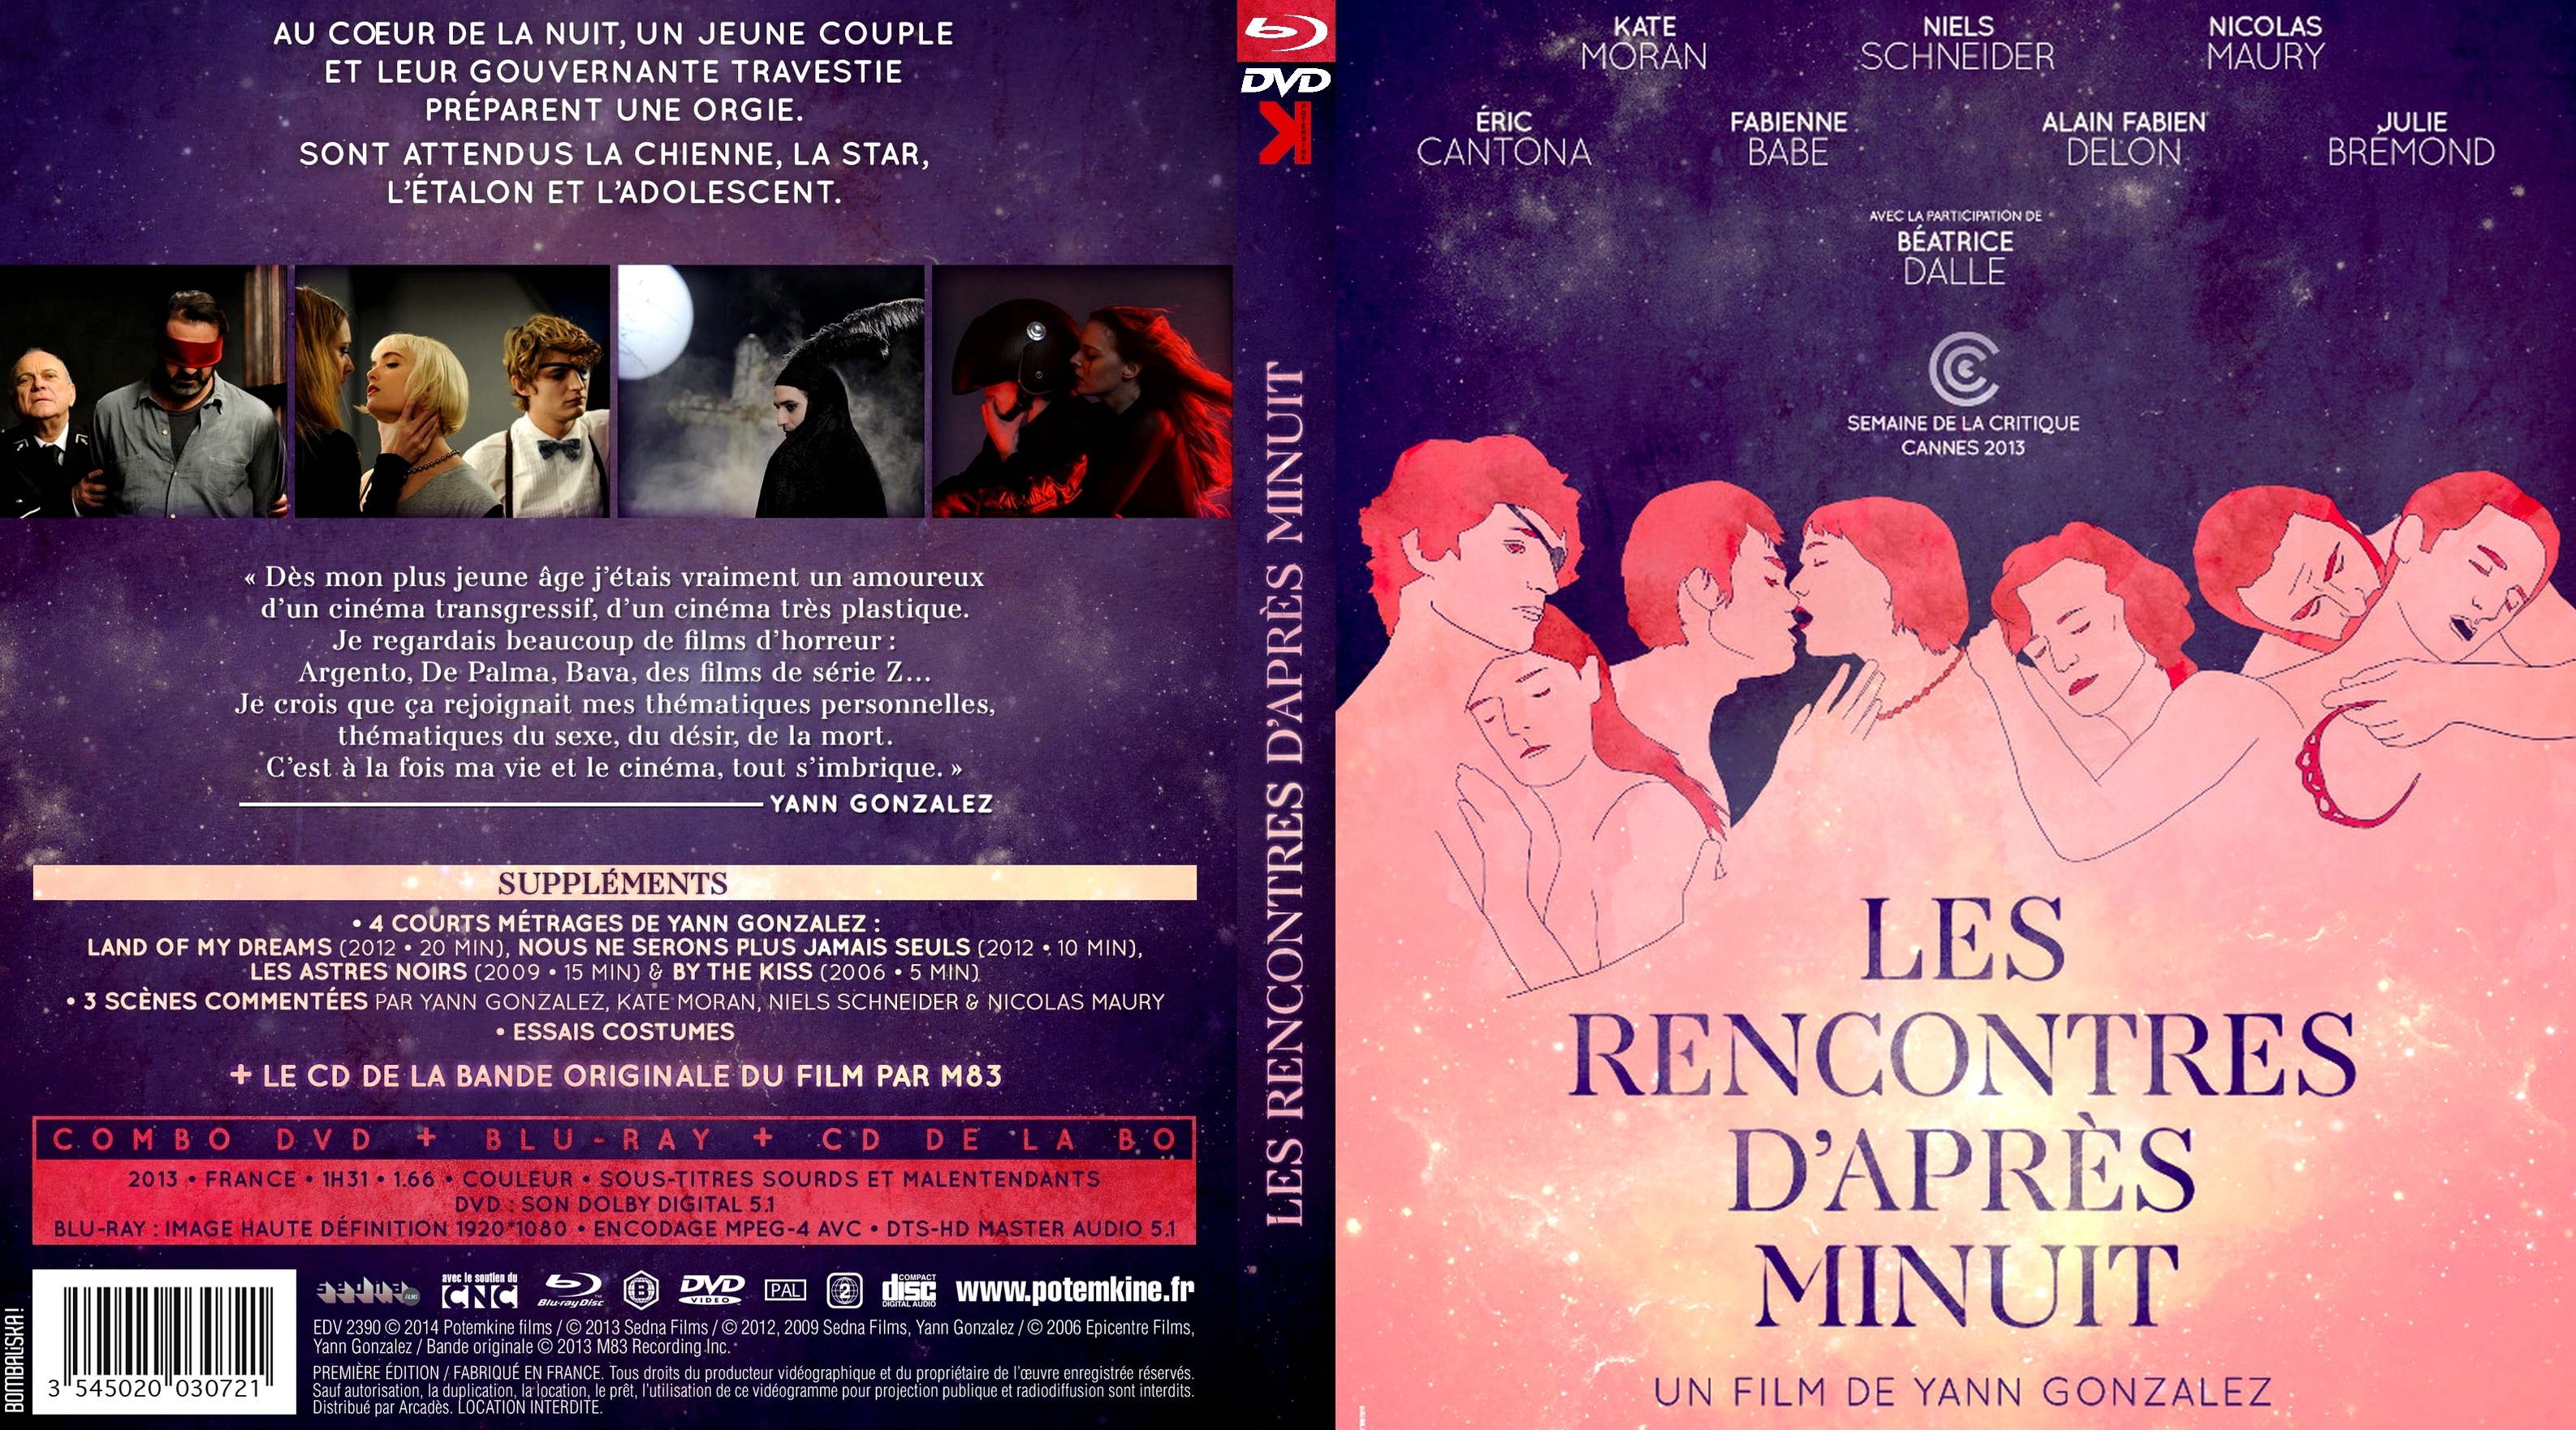 Jaquette DVD Les Rencontres D-apres Minuits BD DVD front